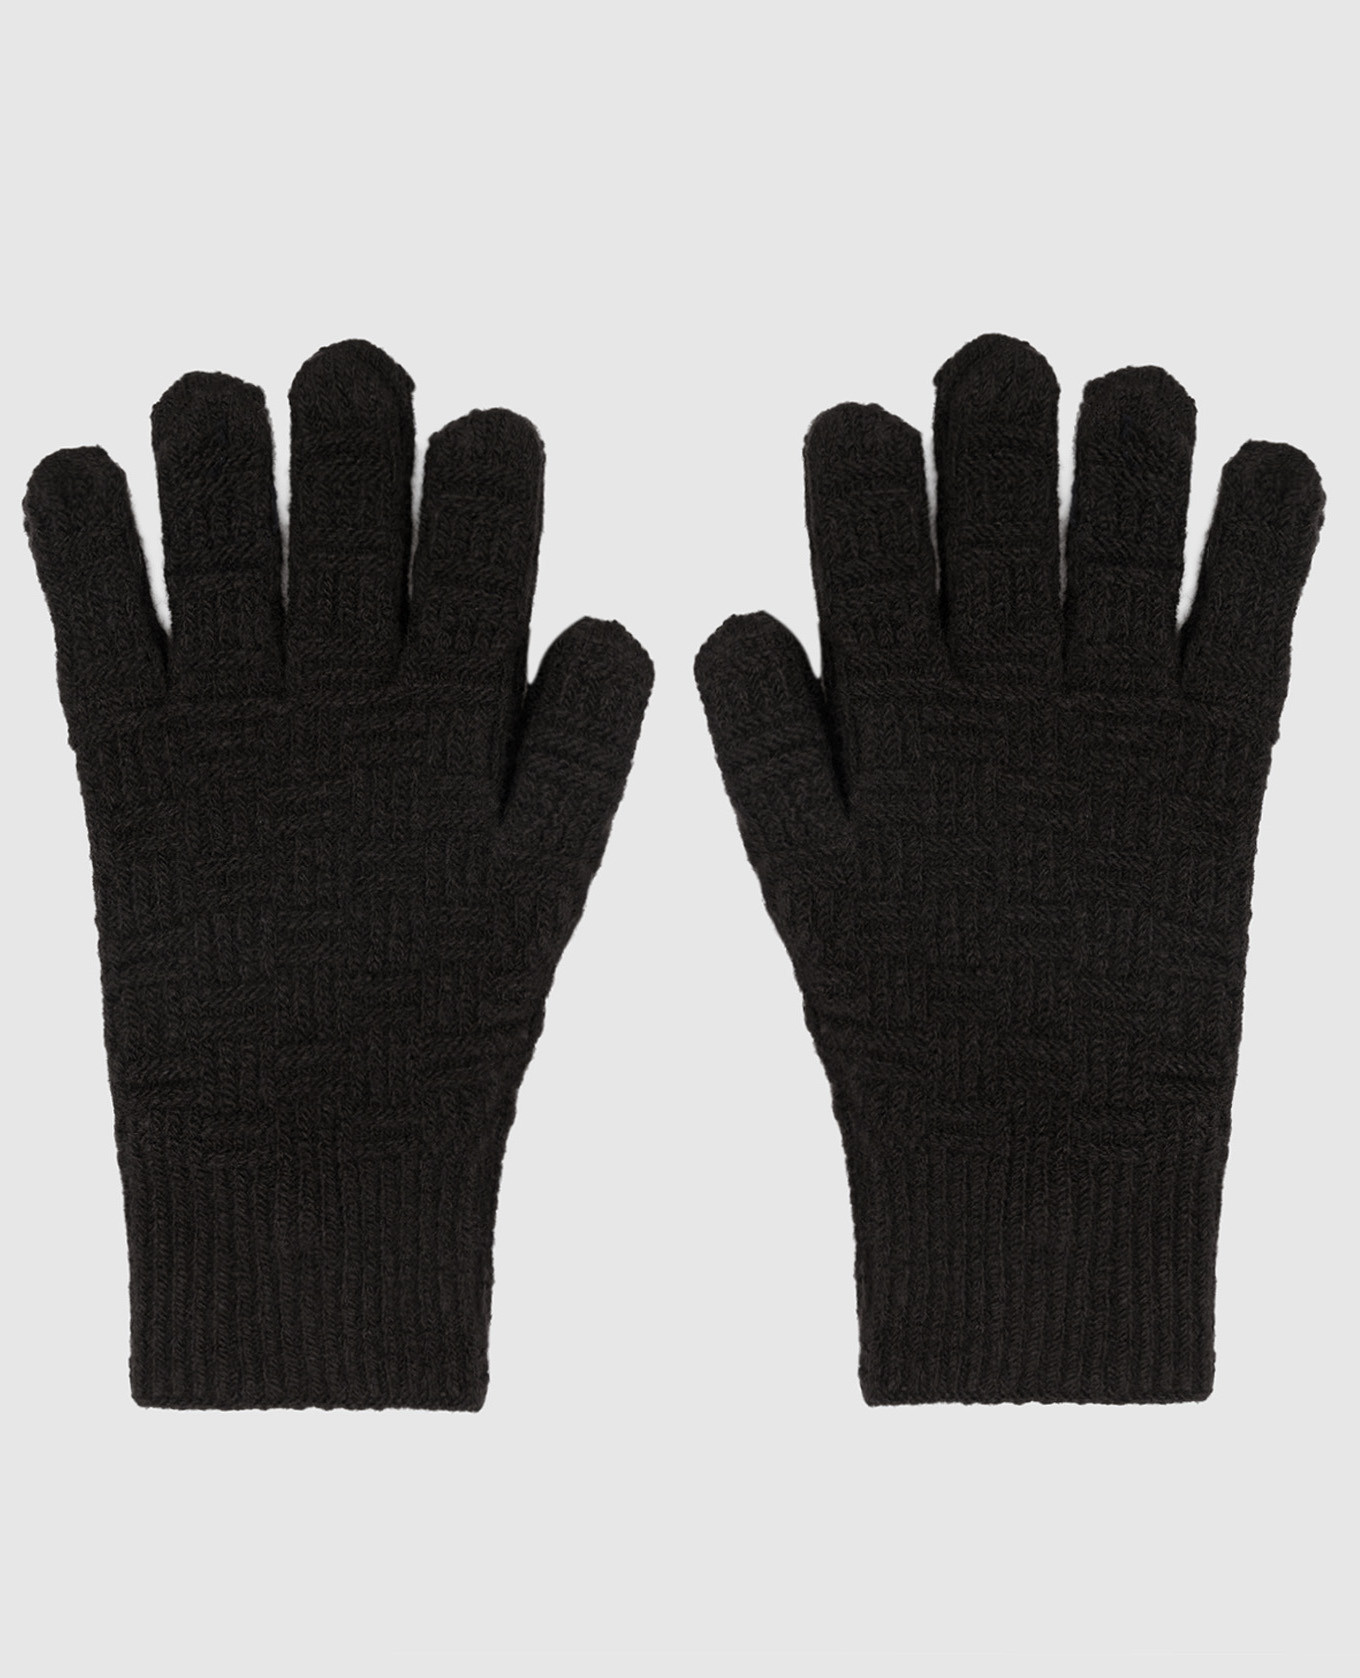 Черные перчатки из шерсти и кашемира в фактурный узор.